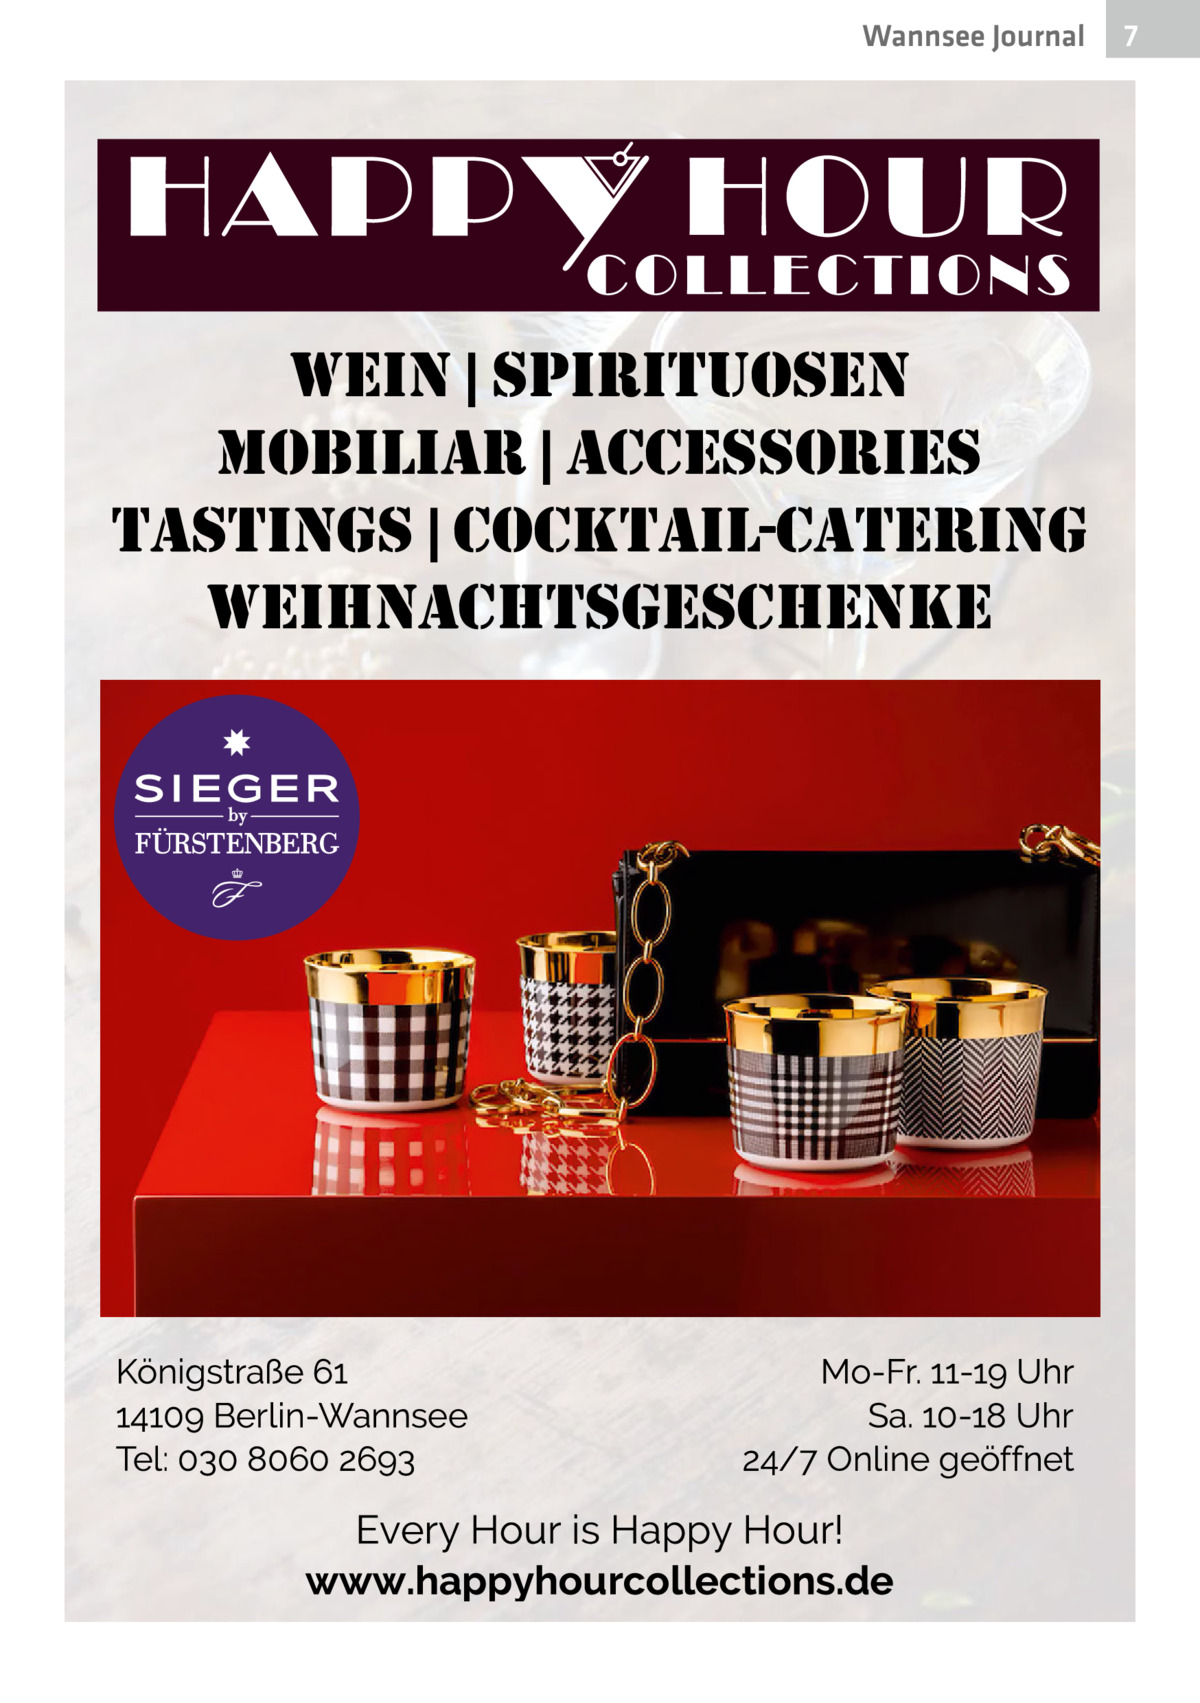 Wannsee Journal  wein | spirituosen mobiliar | accessories tastings | cocktail-catering weihnachtsgeschenke  7